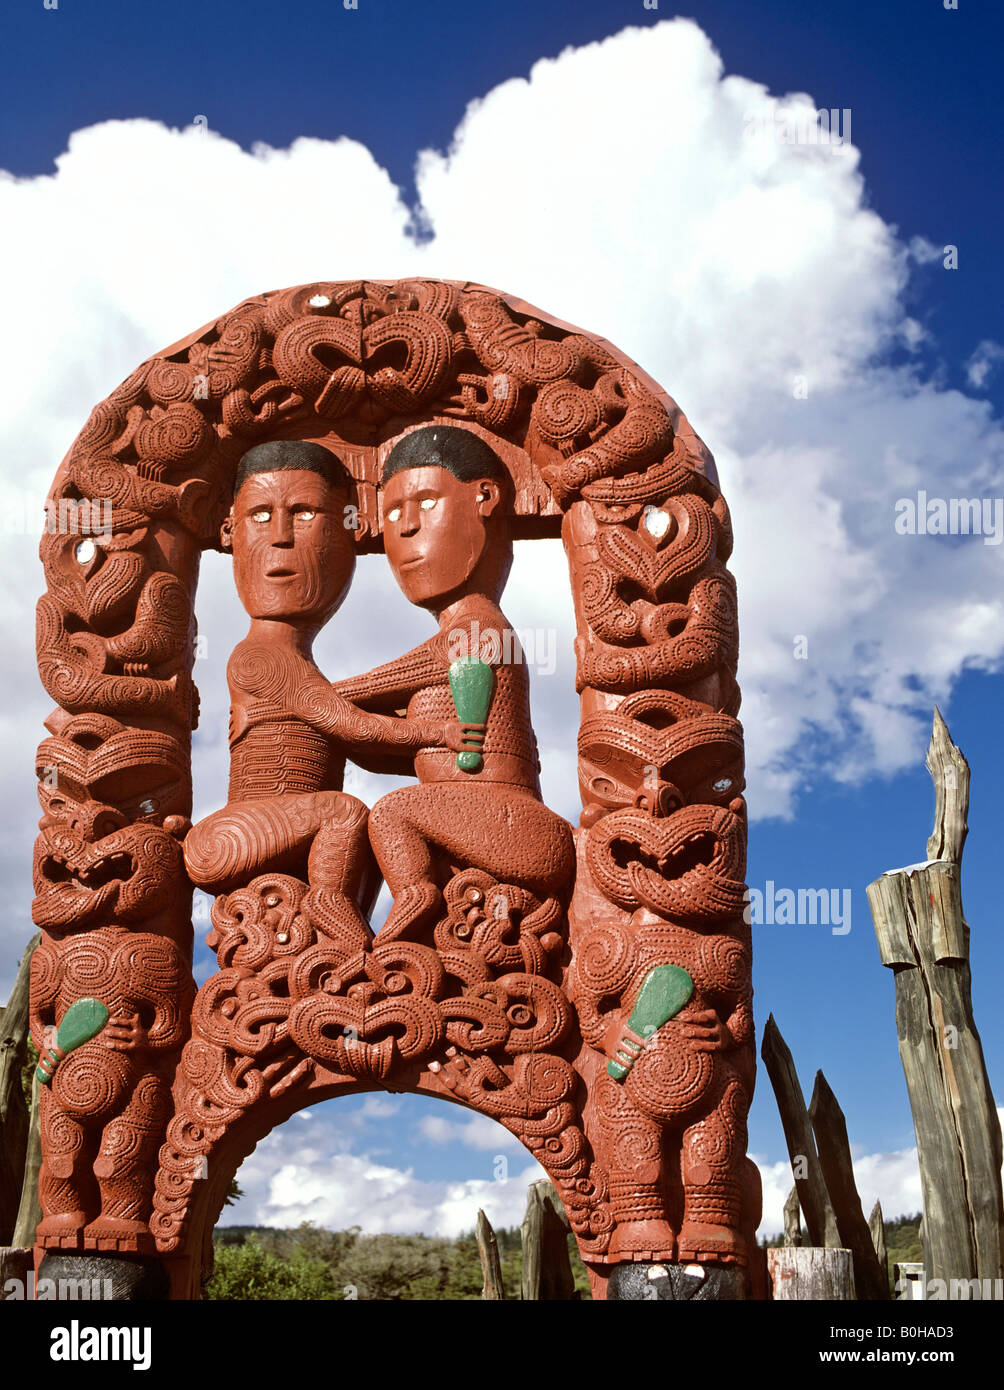 Cancello per Whakarewarewa, villaggio Maori, sculture in legno, Rotorua, Isola del nord, Nuova Zelanda Foto Stock